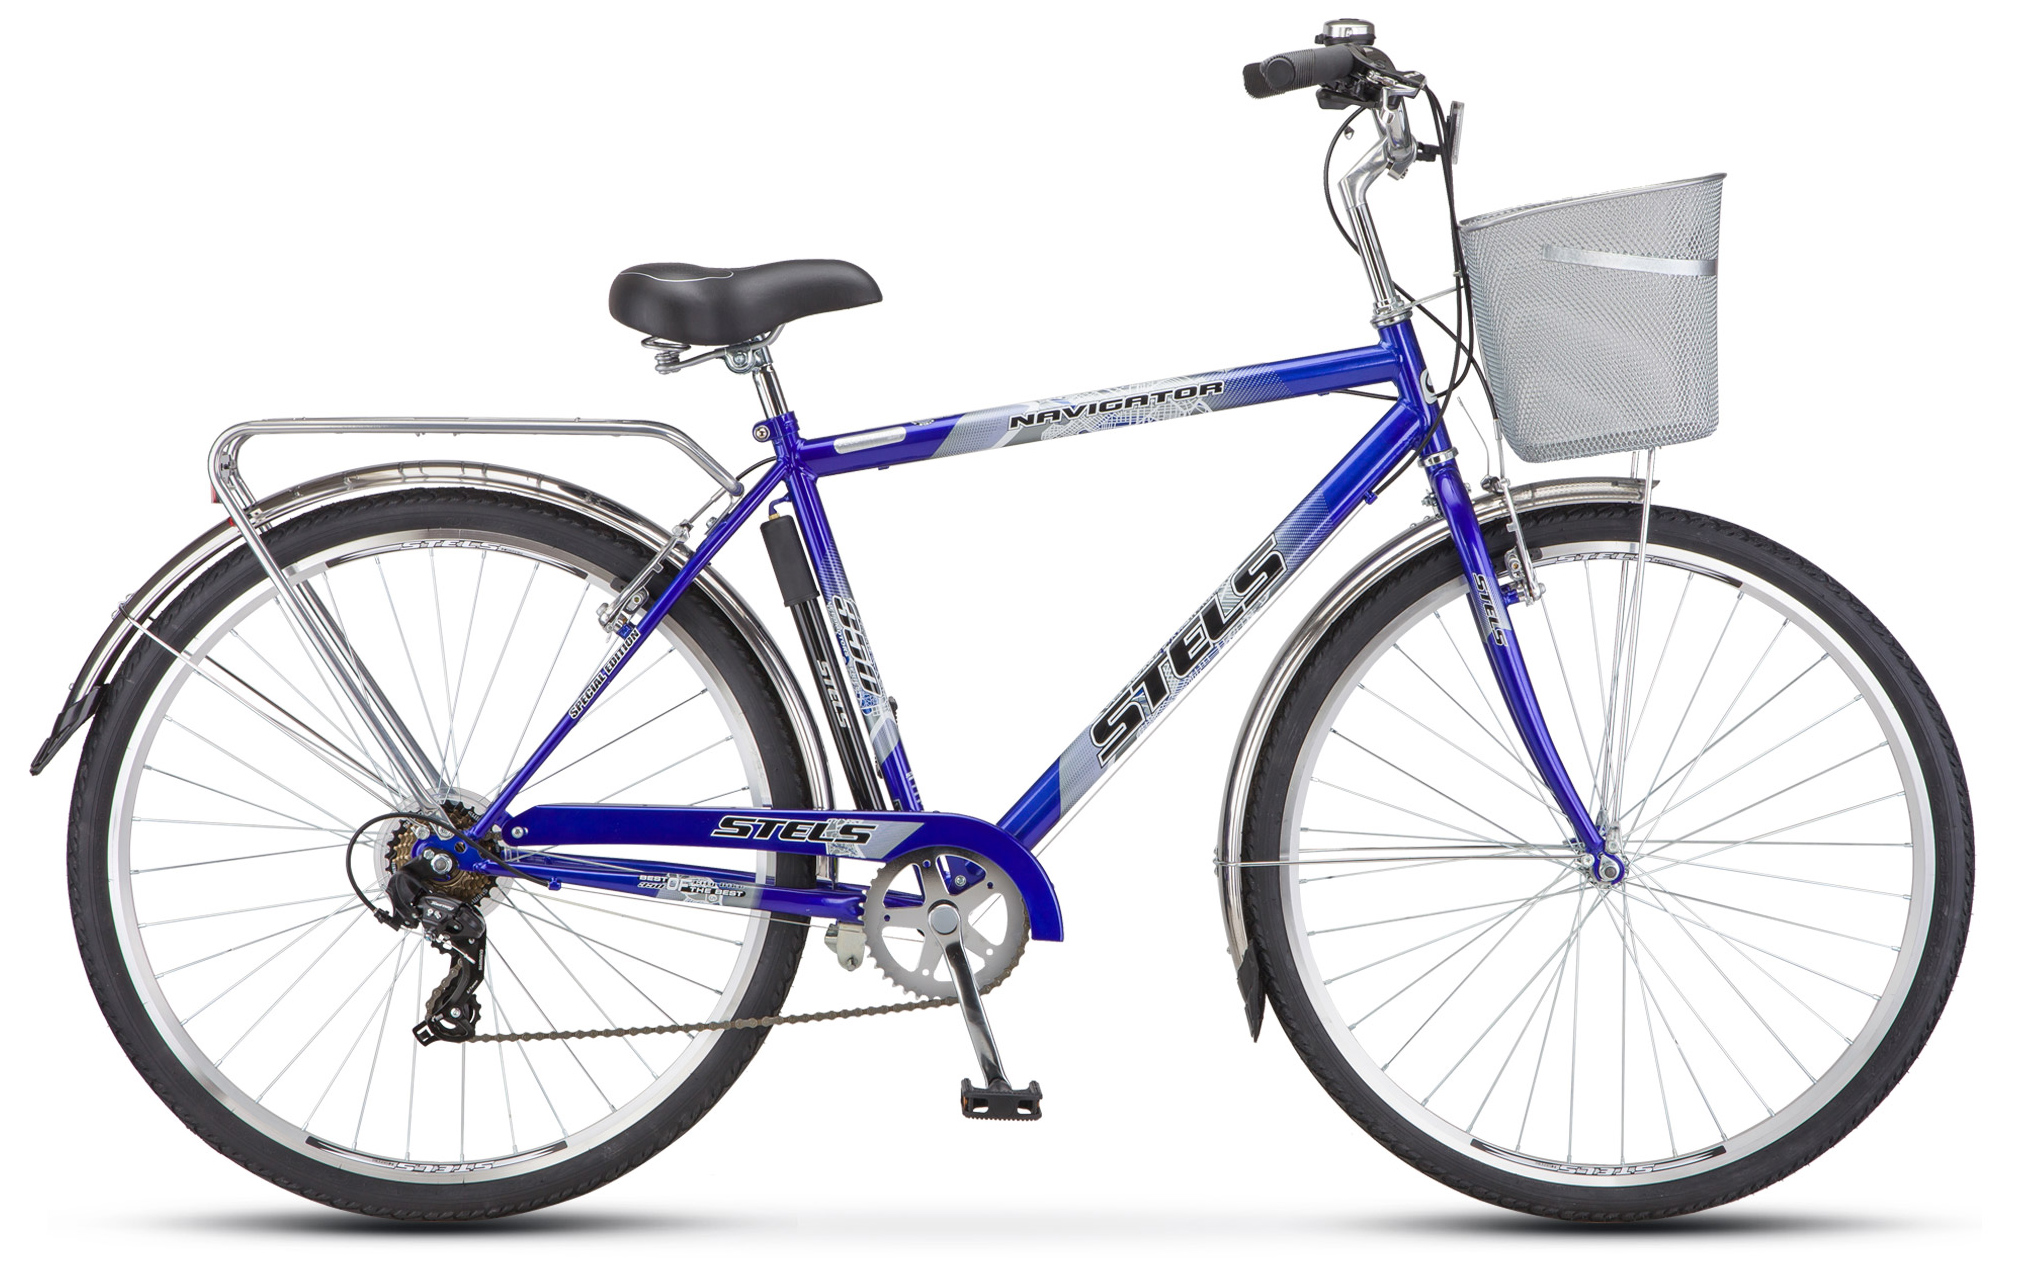  Отзывы о Городском велосипеде Stels Navigator 350 Gent 28" (Z010) 2019